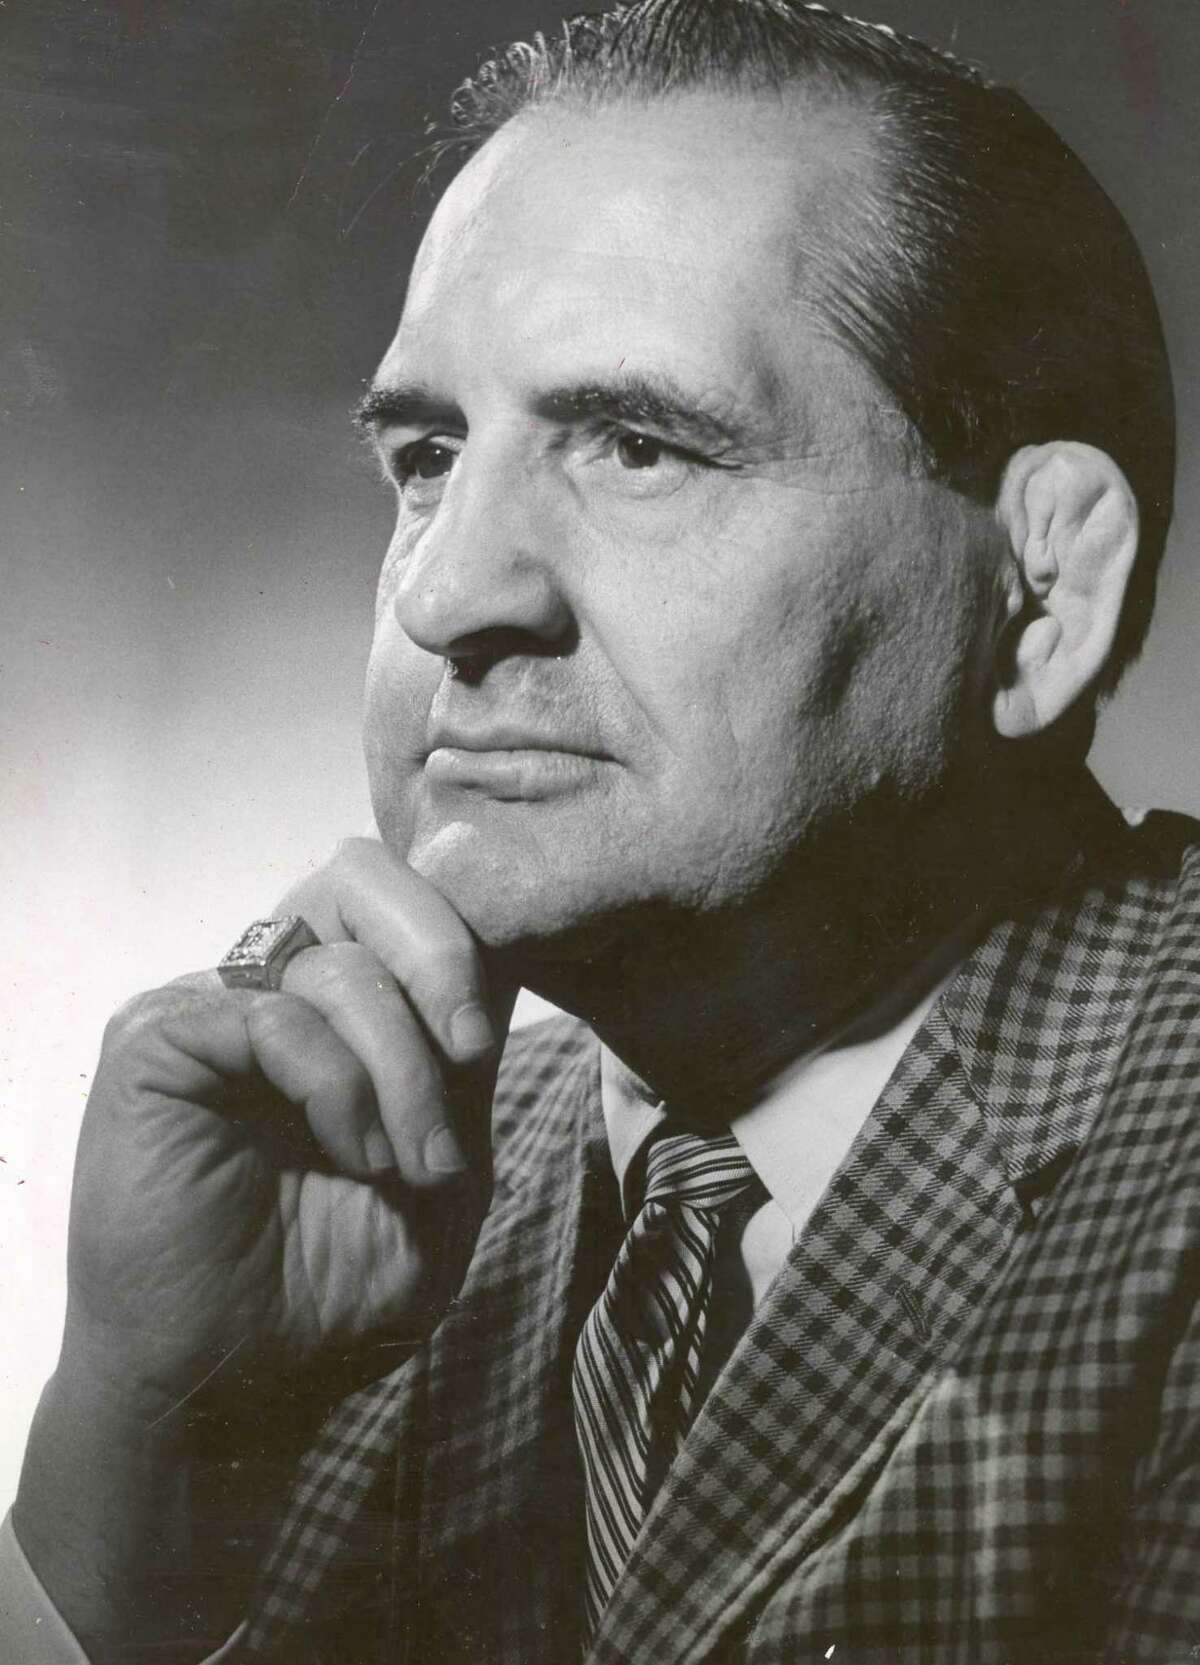 Paul Boesch in 1966.